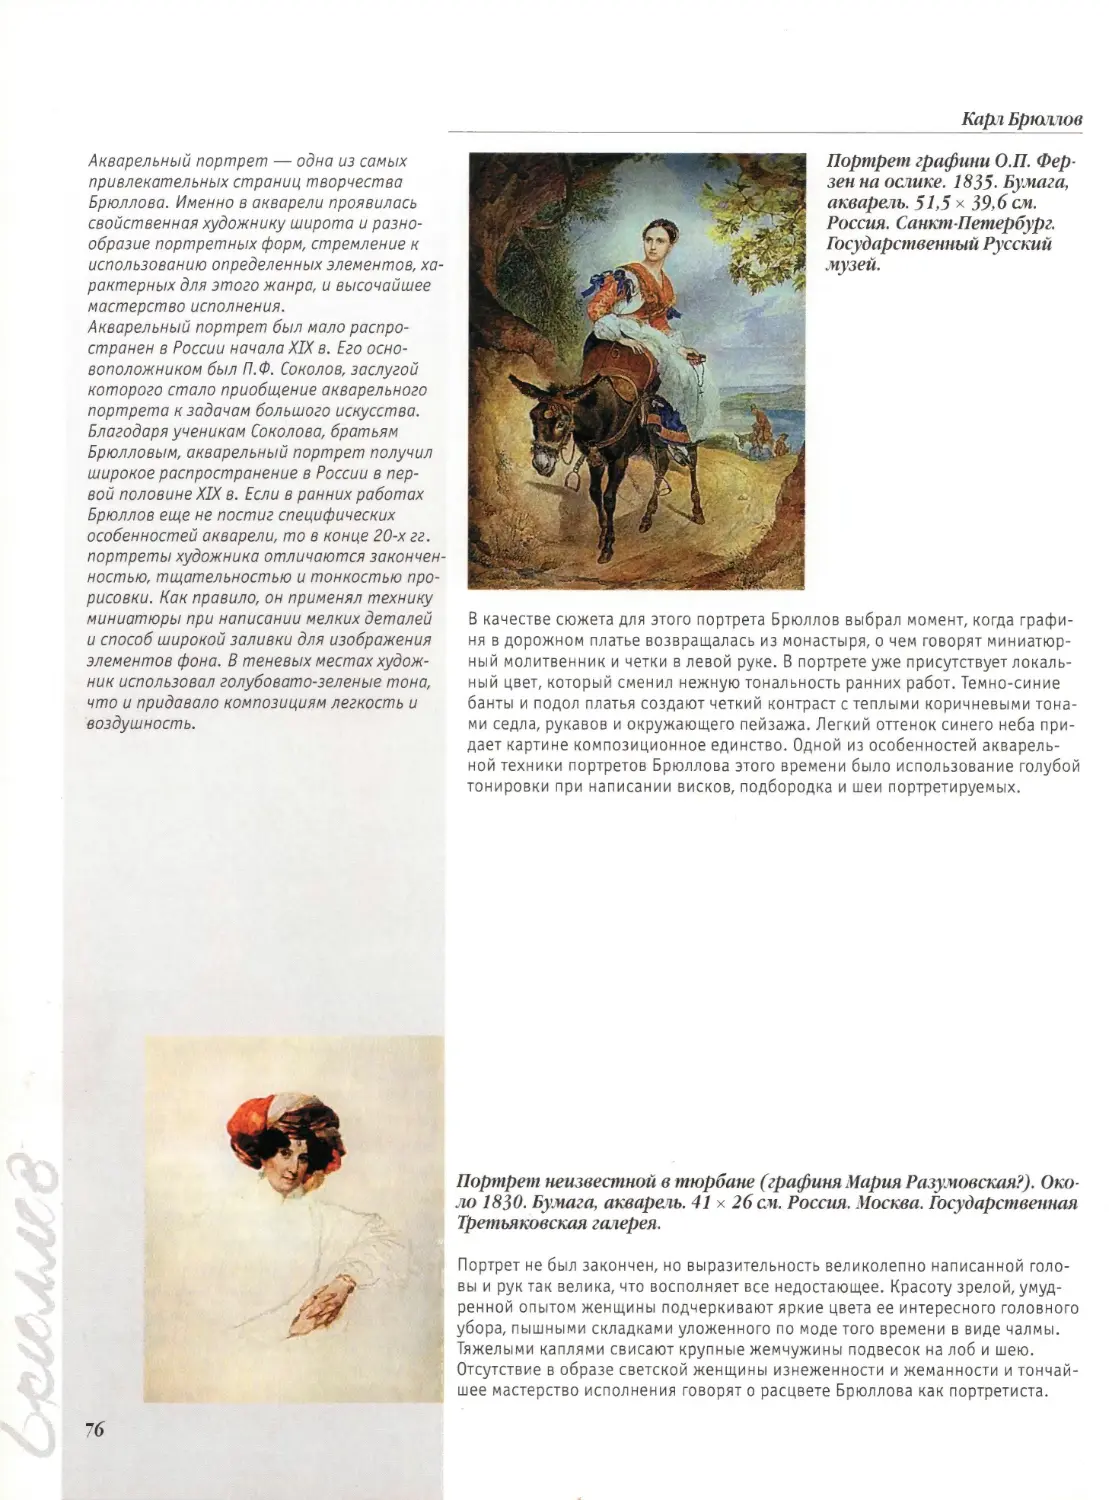 Портрет графини О.П.Ферзен на ослике
Портрет неизвестной в тюрбане (графиня Мария Разумовская